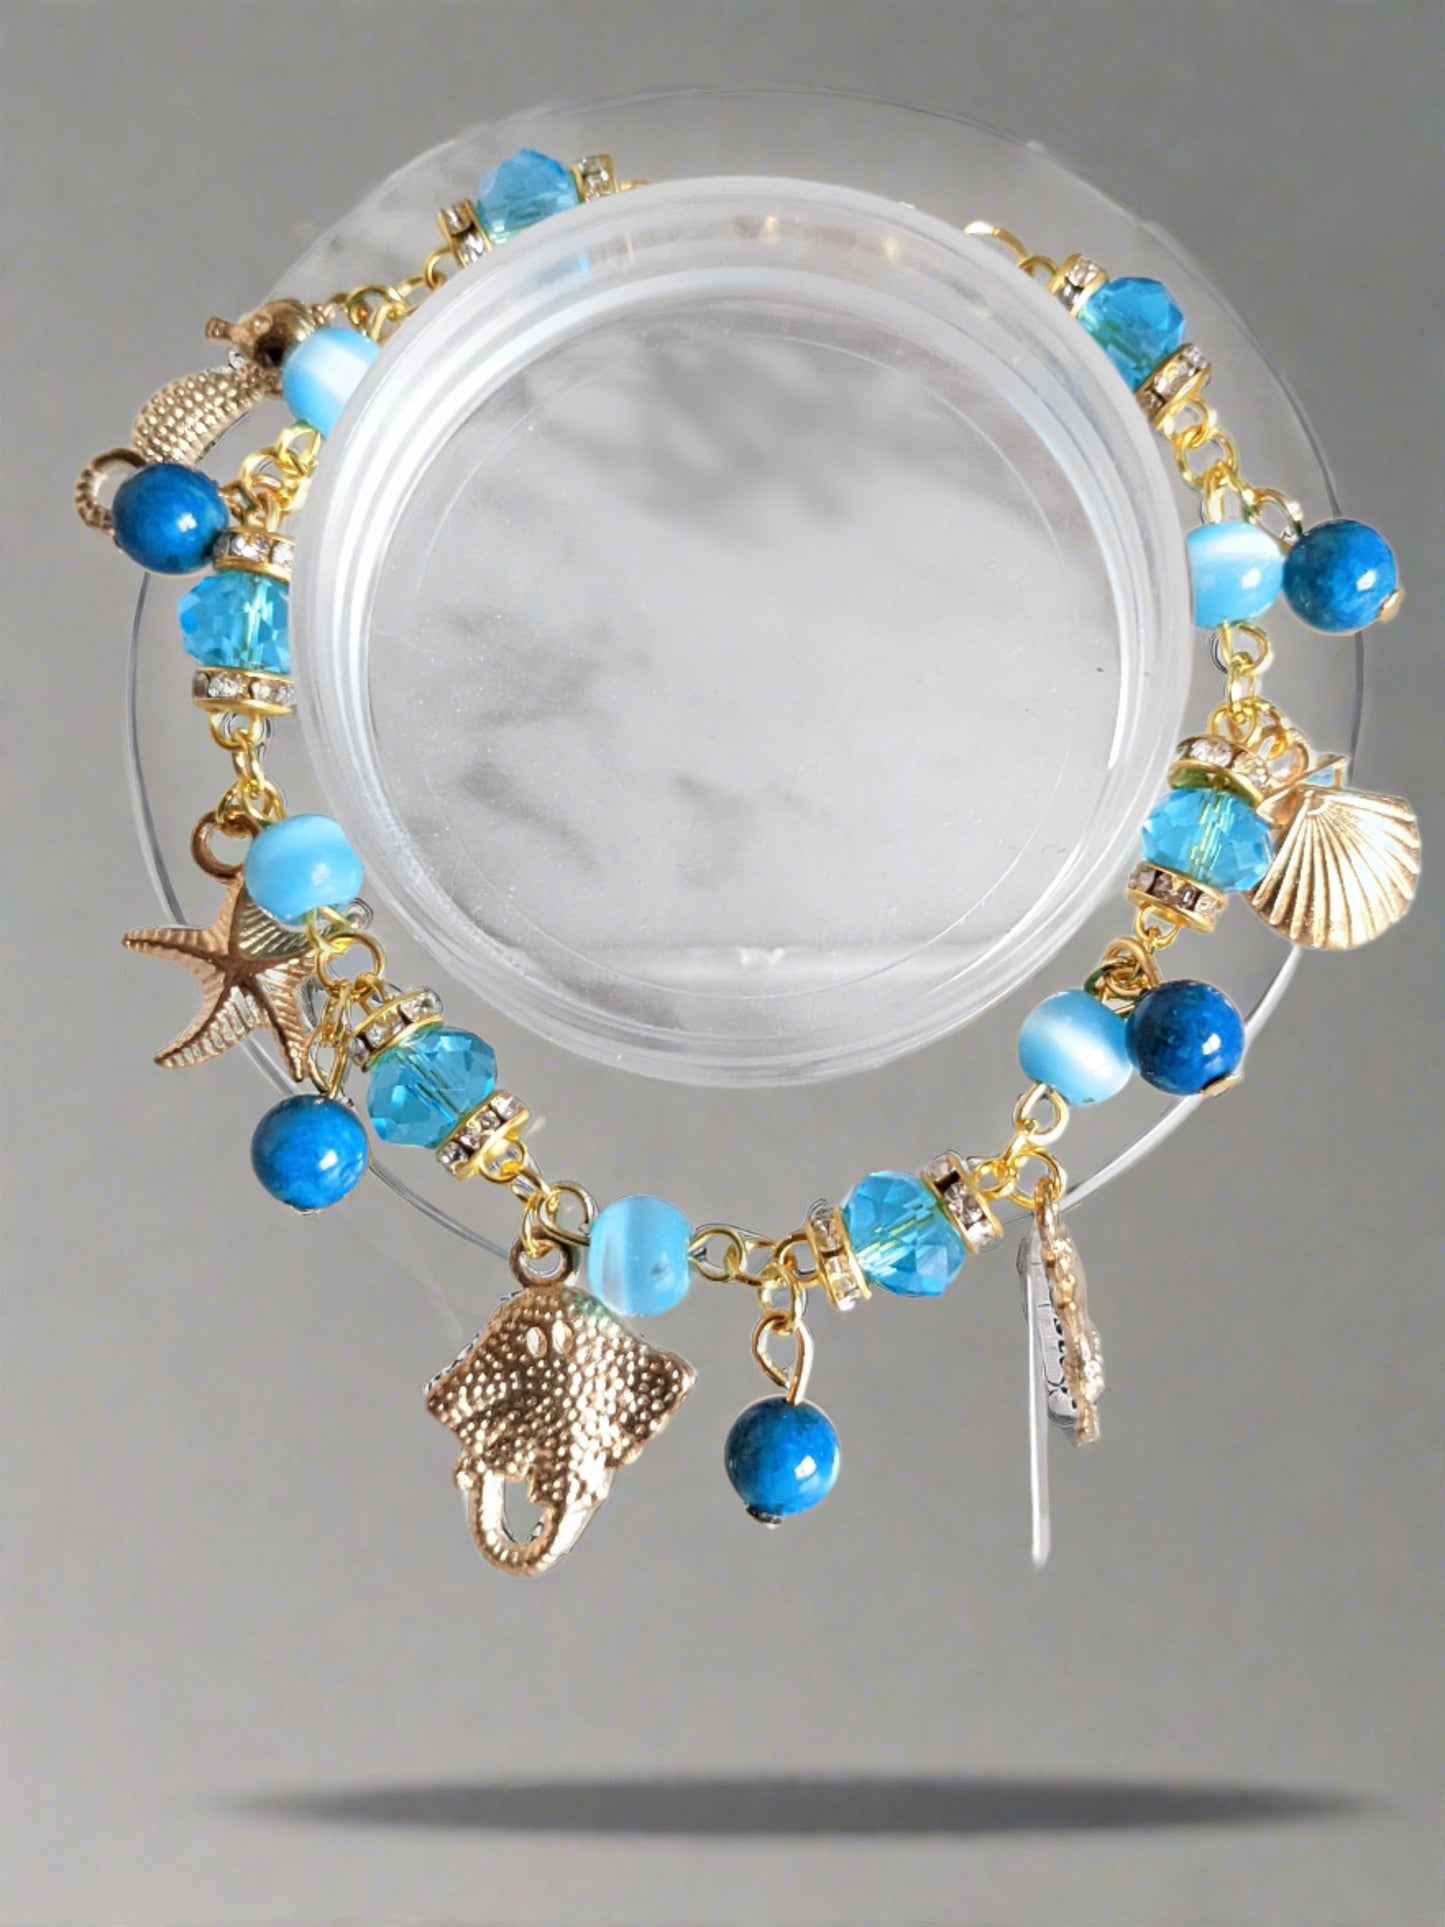 Blue ocean charm bracelet